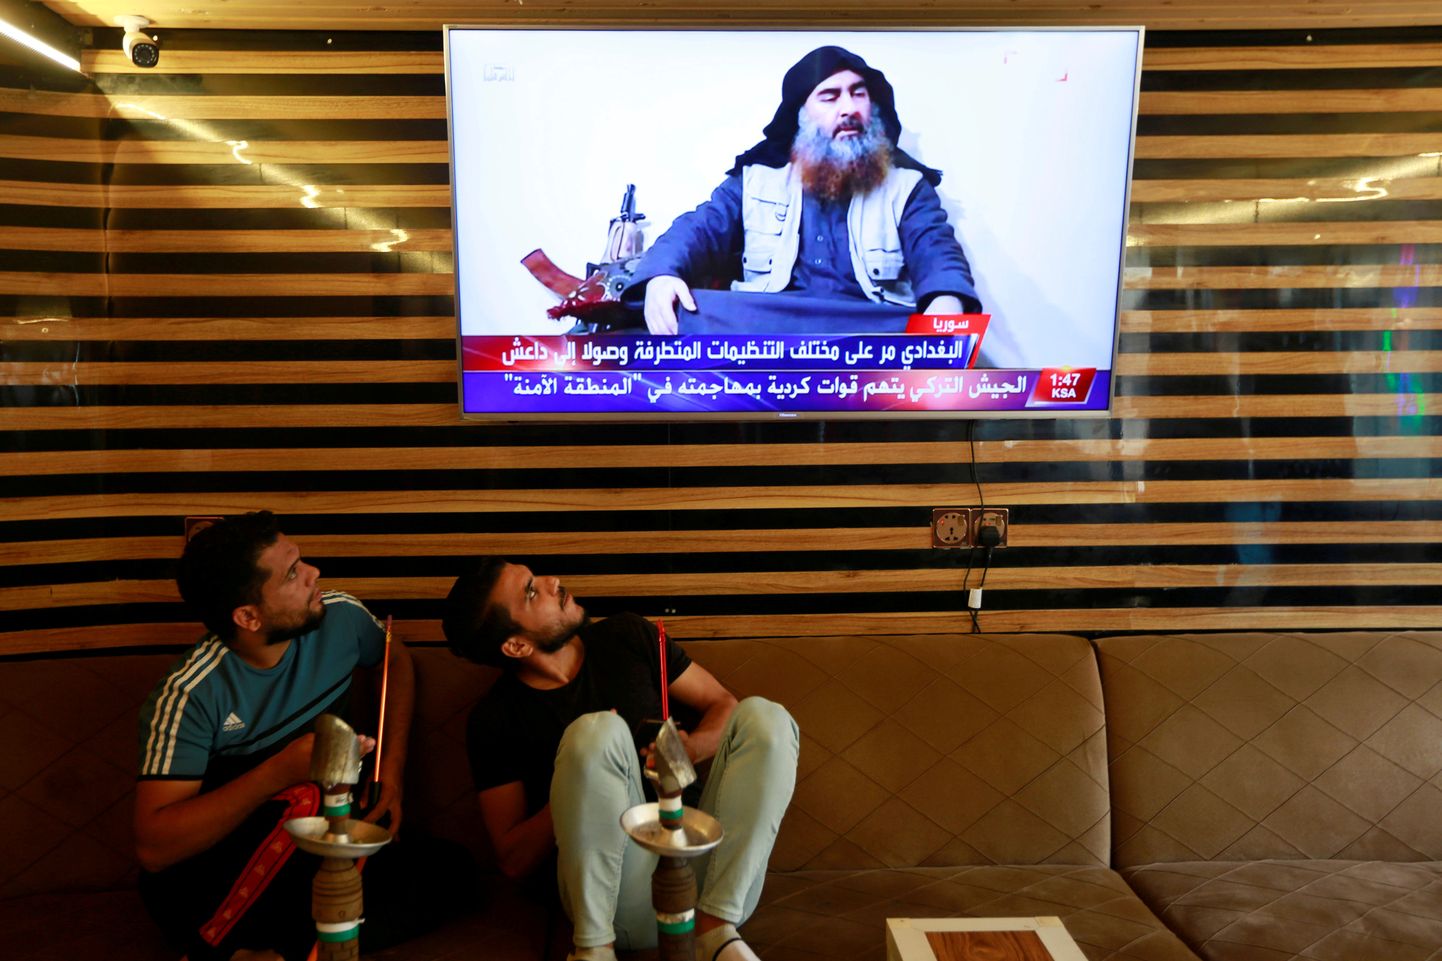 Iraagi noored vaatamas Najafi linnas telekast uudist äärmusrühmituse Islamiriik juhi Abu Bakr al-Baghdadi surmast.